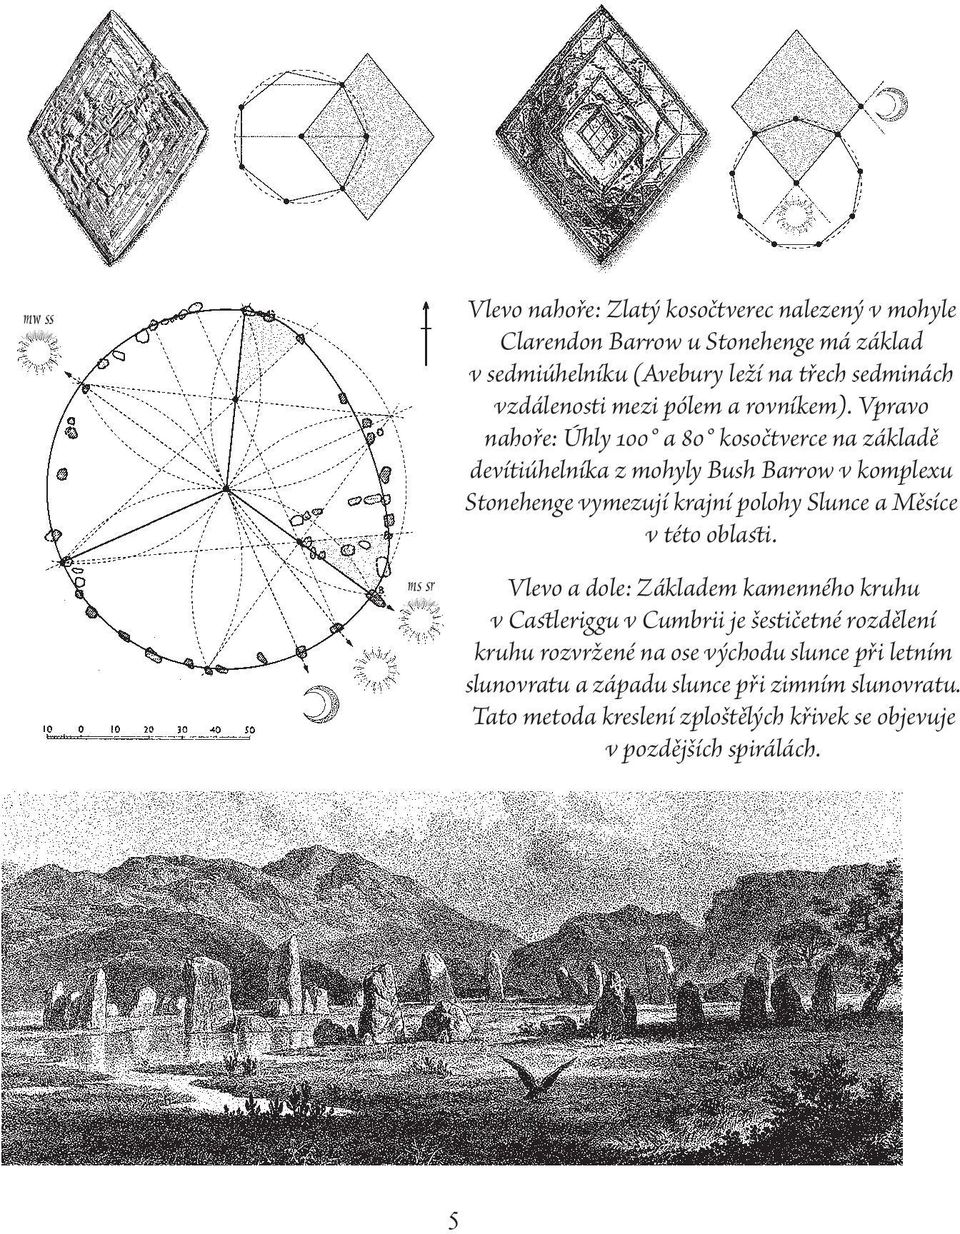 Vpravo nahoře: Úhly 100 a 80 kosočtverce na základě devítiúhelníka z mohyly Bush Barrow v komplexu Stonehenge vymezují krajní polohy Slunce a Měsíce v